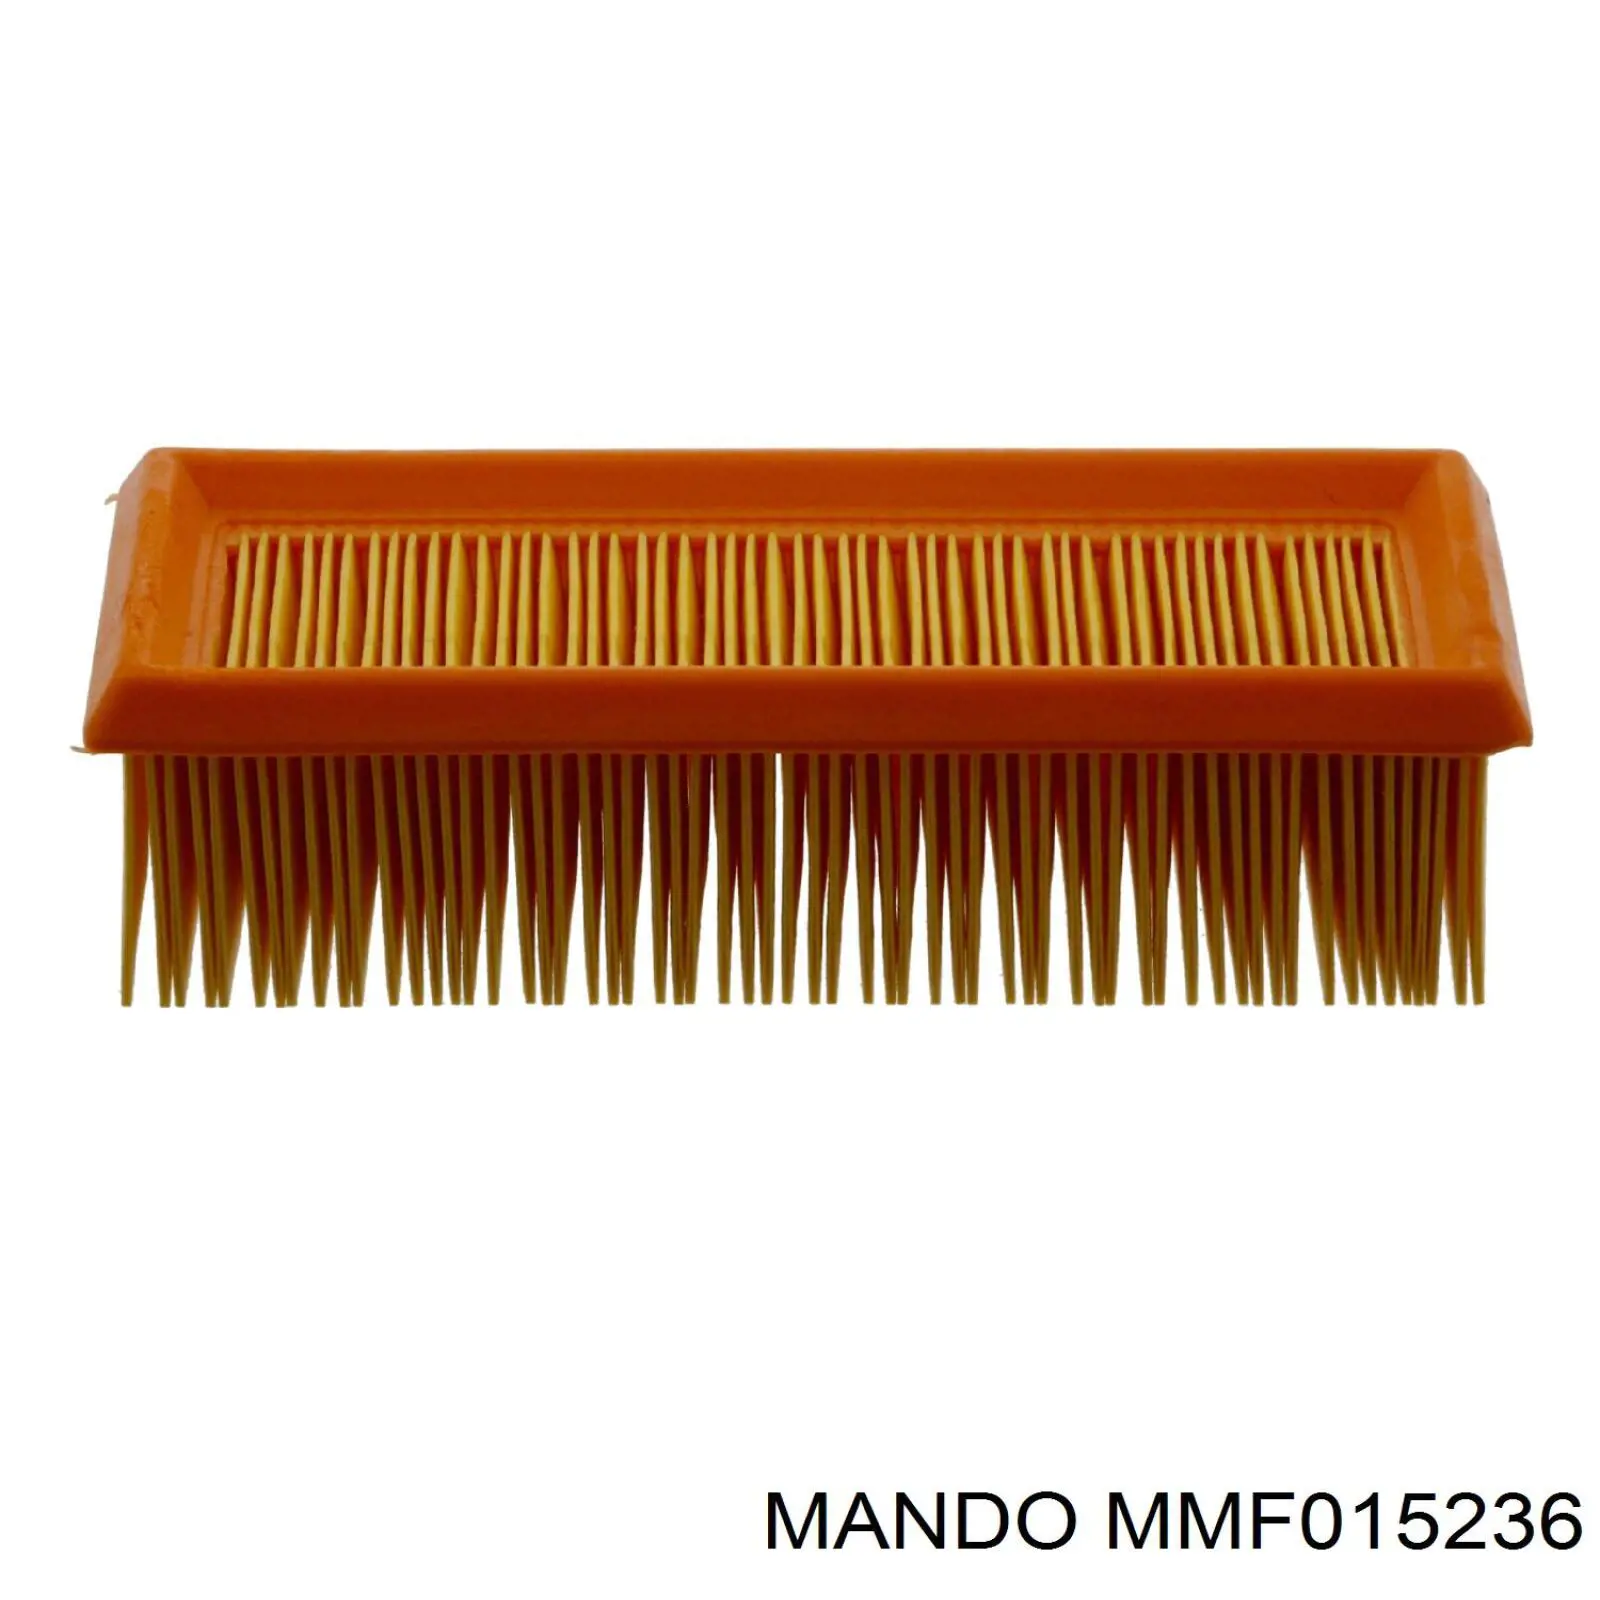 MMF015236 Mando воздушный фильтр